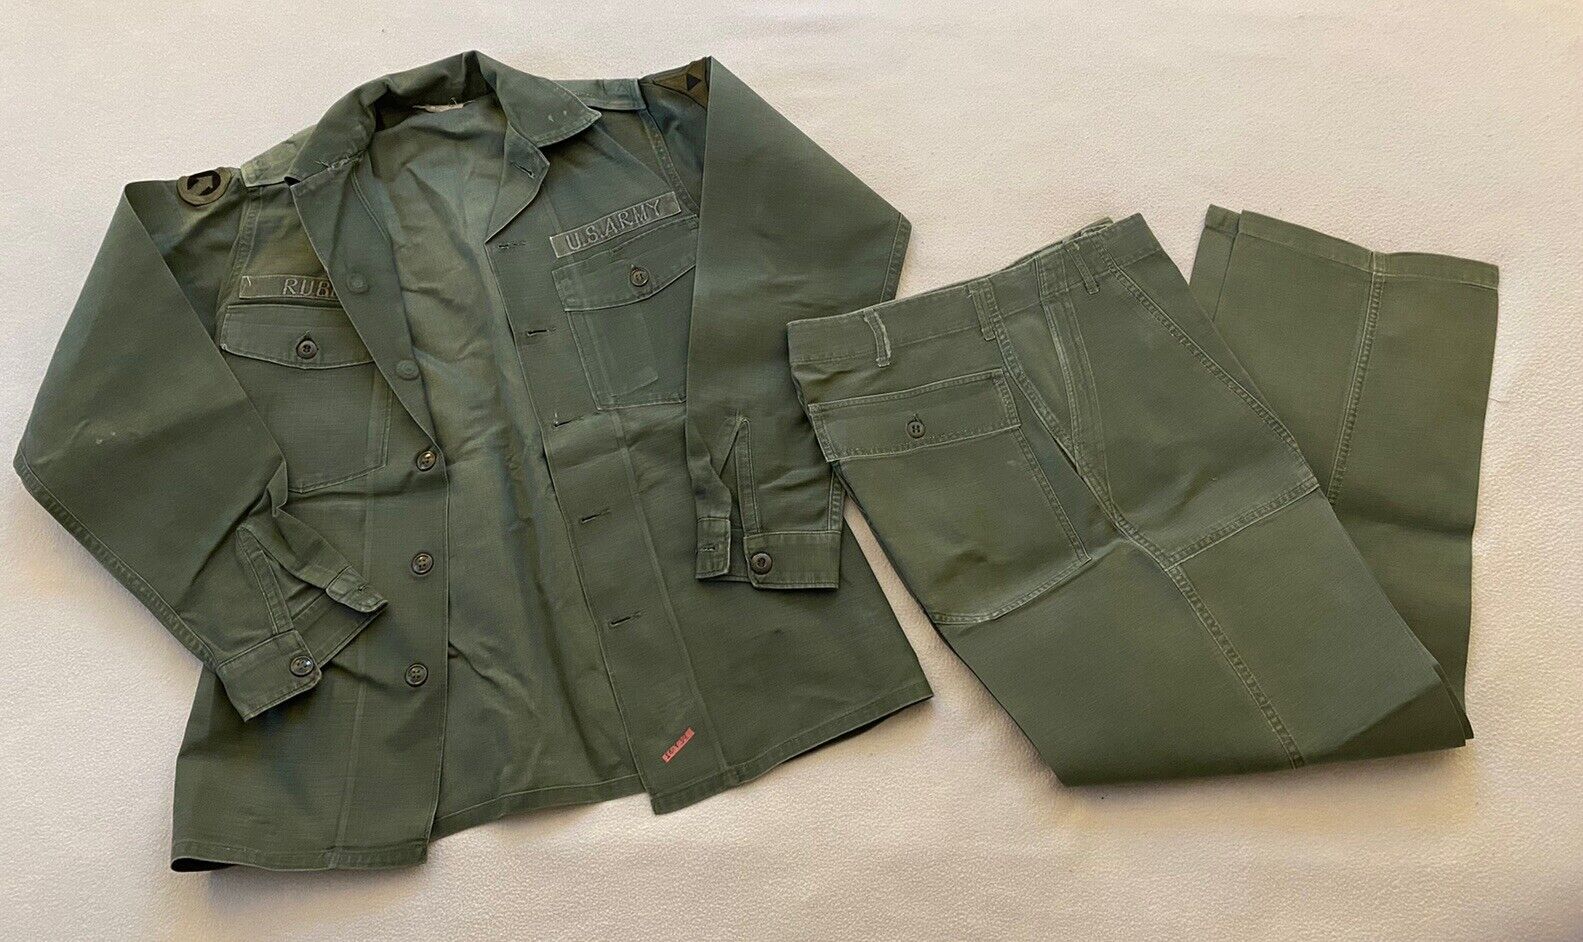 Lot of 4 - VTG US Army Uniforms Olive Green Sateen OG 107 Sz 14.5 X 33 (JL-183)